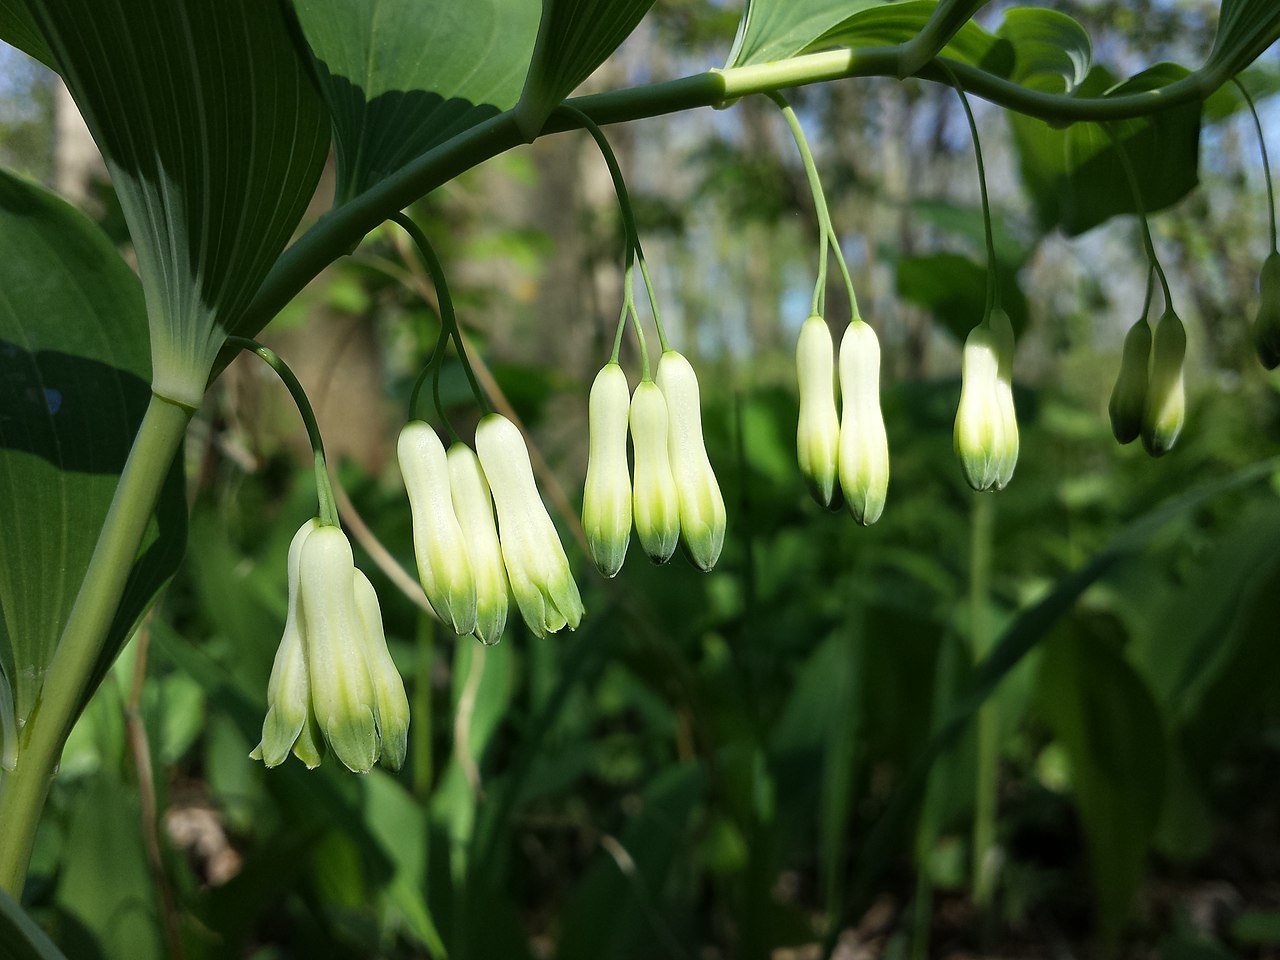 Kokoryczka wielokwiatowa - (Poligonatum multiforum L.) na zdjęciu łukowate łodygi na niej rosną eliptycznie wydłużone zielone liście, a pod nimi zwieszają się dzwonkowate białe kwiaty, źródło zdjęcia: Polygonatum multiflorum sl5 - Kokoryczka wielokwiatowa - Wikipedia, wolna encyklopedia